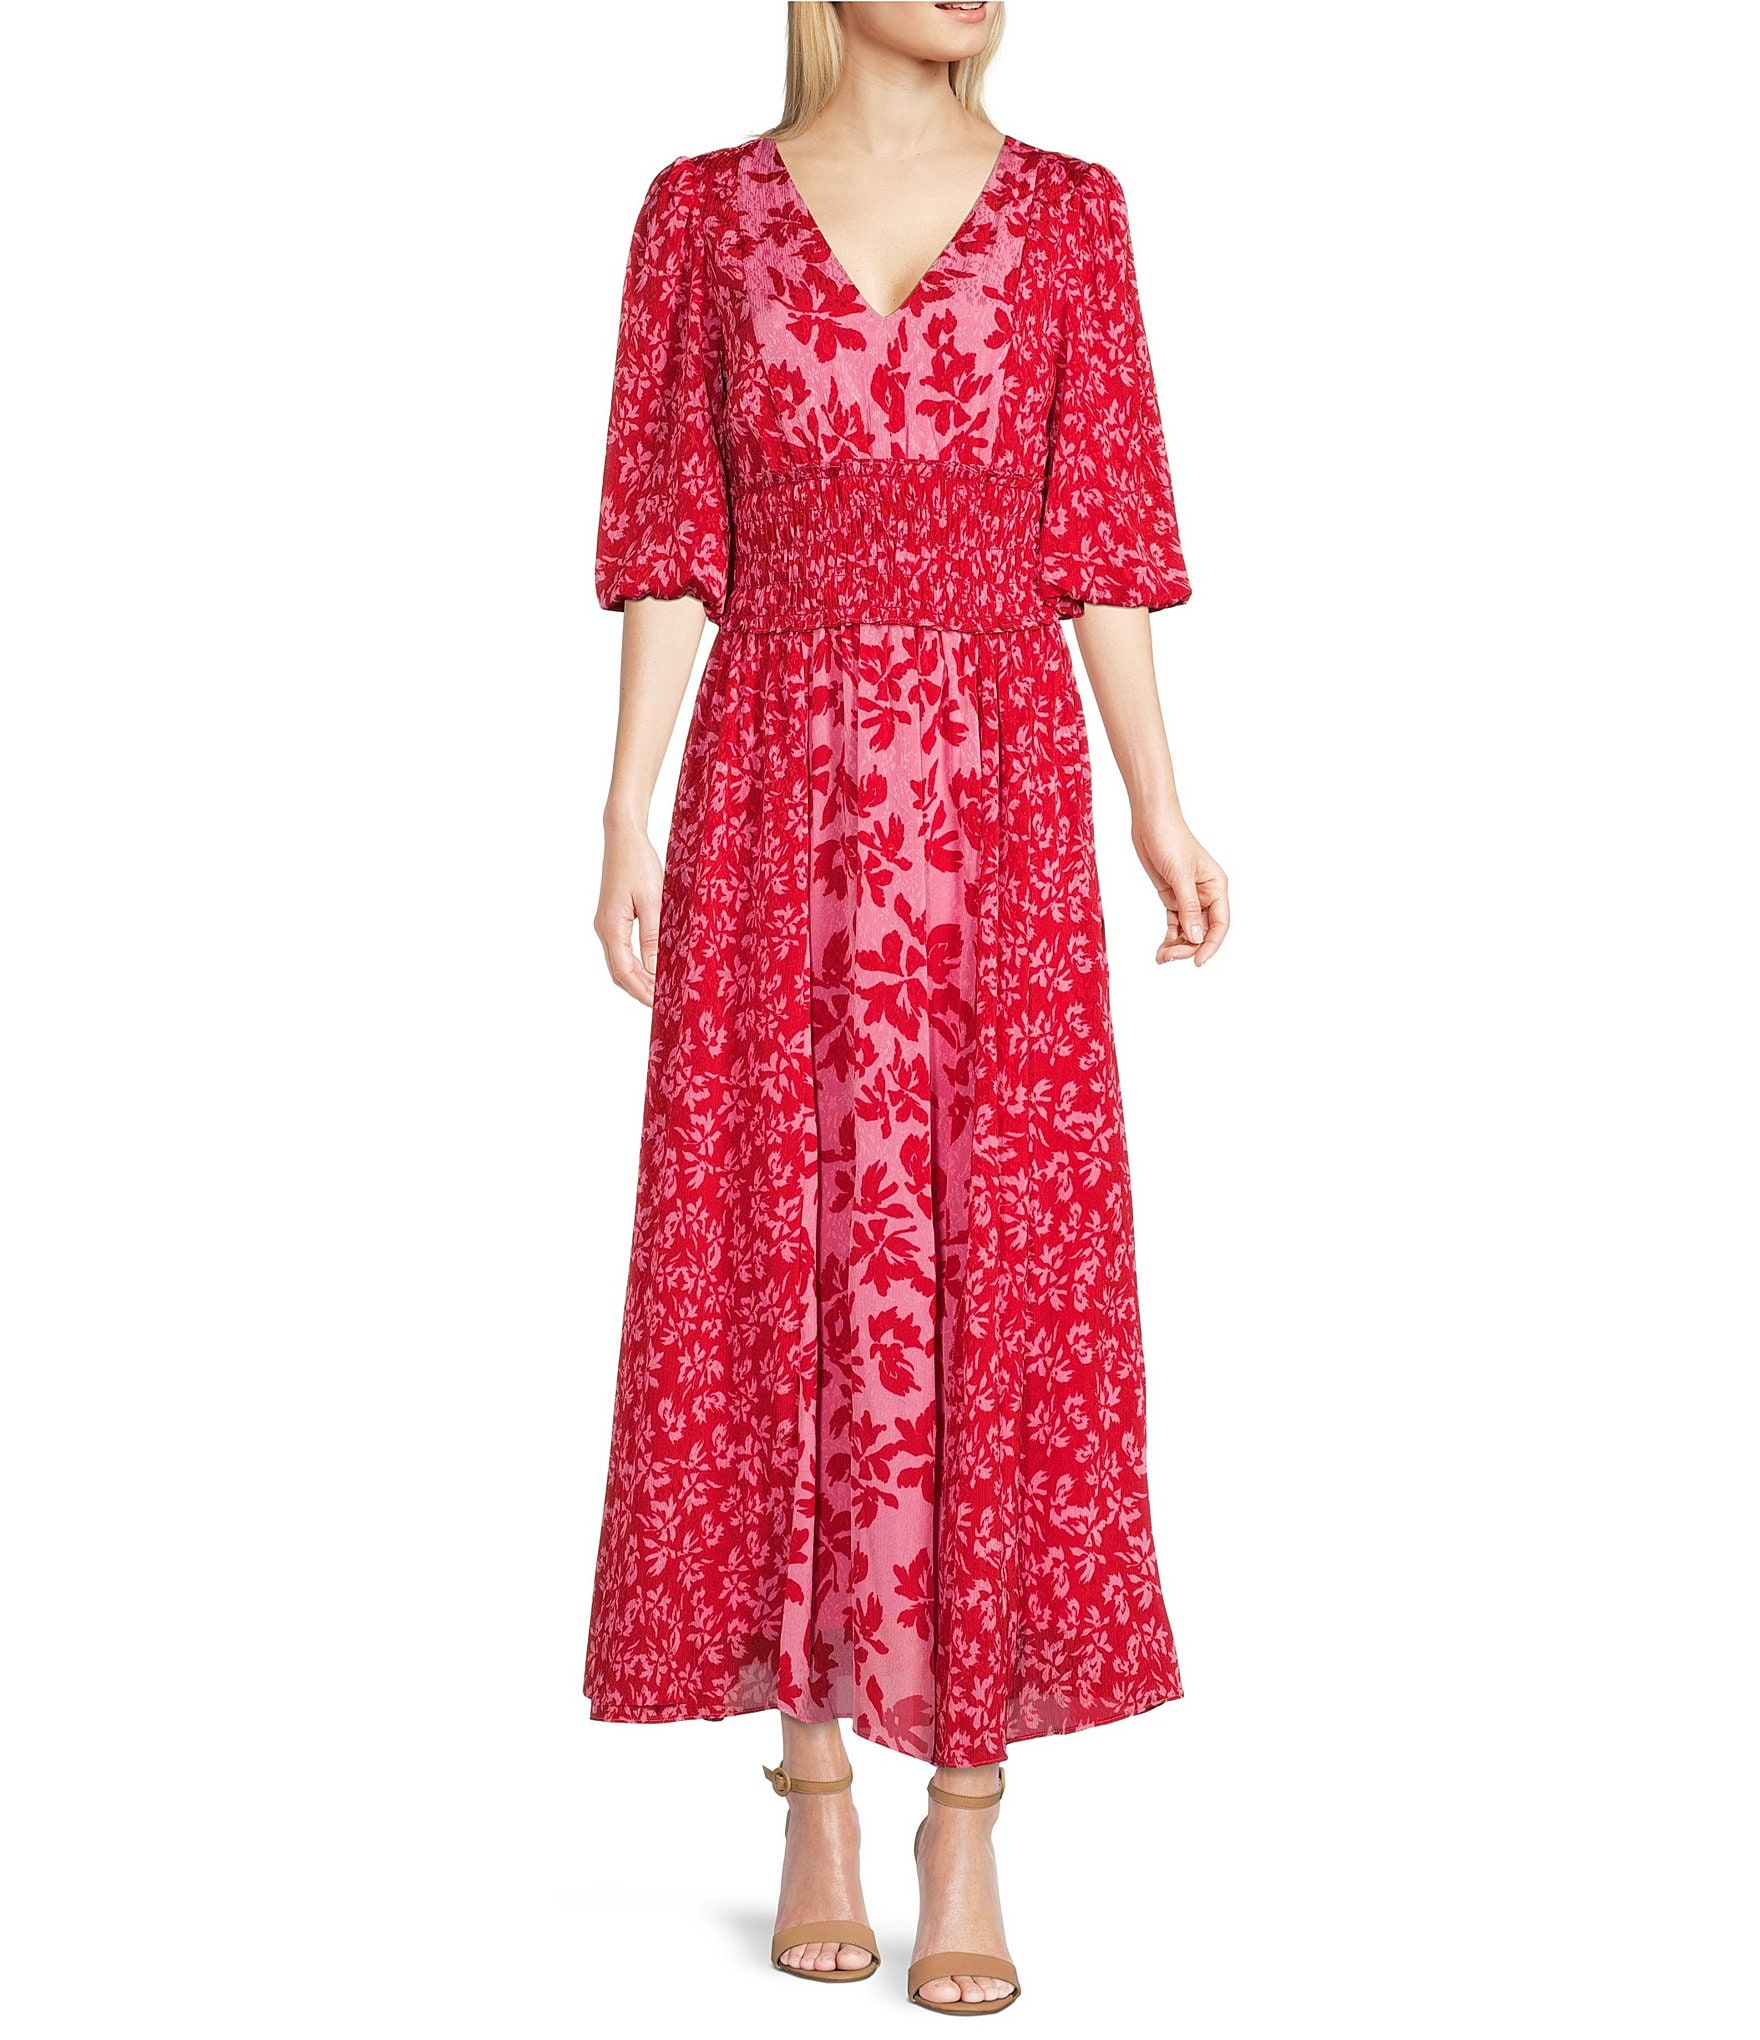 Taylor Floral Print V-Neck 3/4 Sleeve Smocked Waist A-Line Dress ...